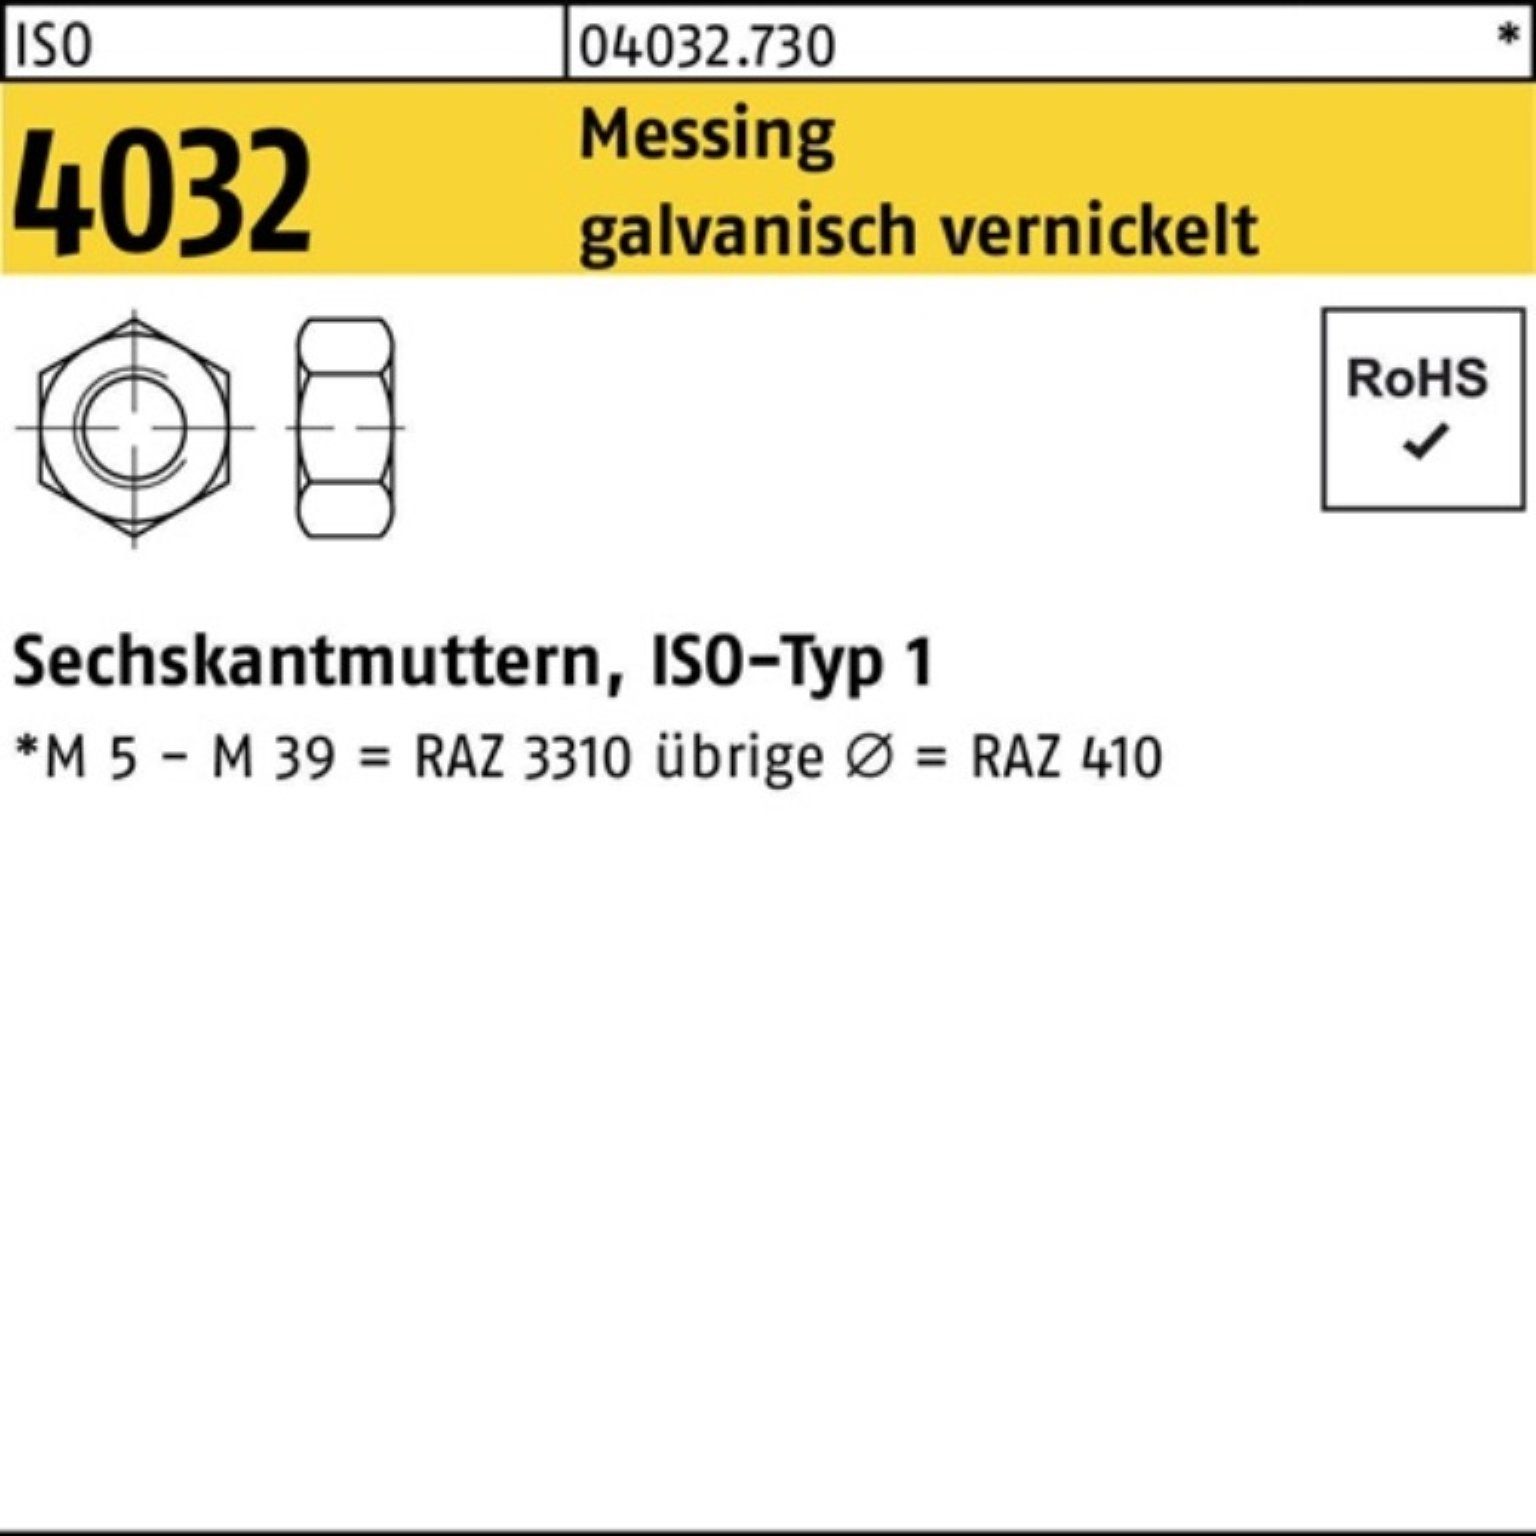 Muttern S 100er Bufab ISO M12 Messing Sechskantmutter Pack 100 vernickelt 4032 galv.